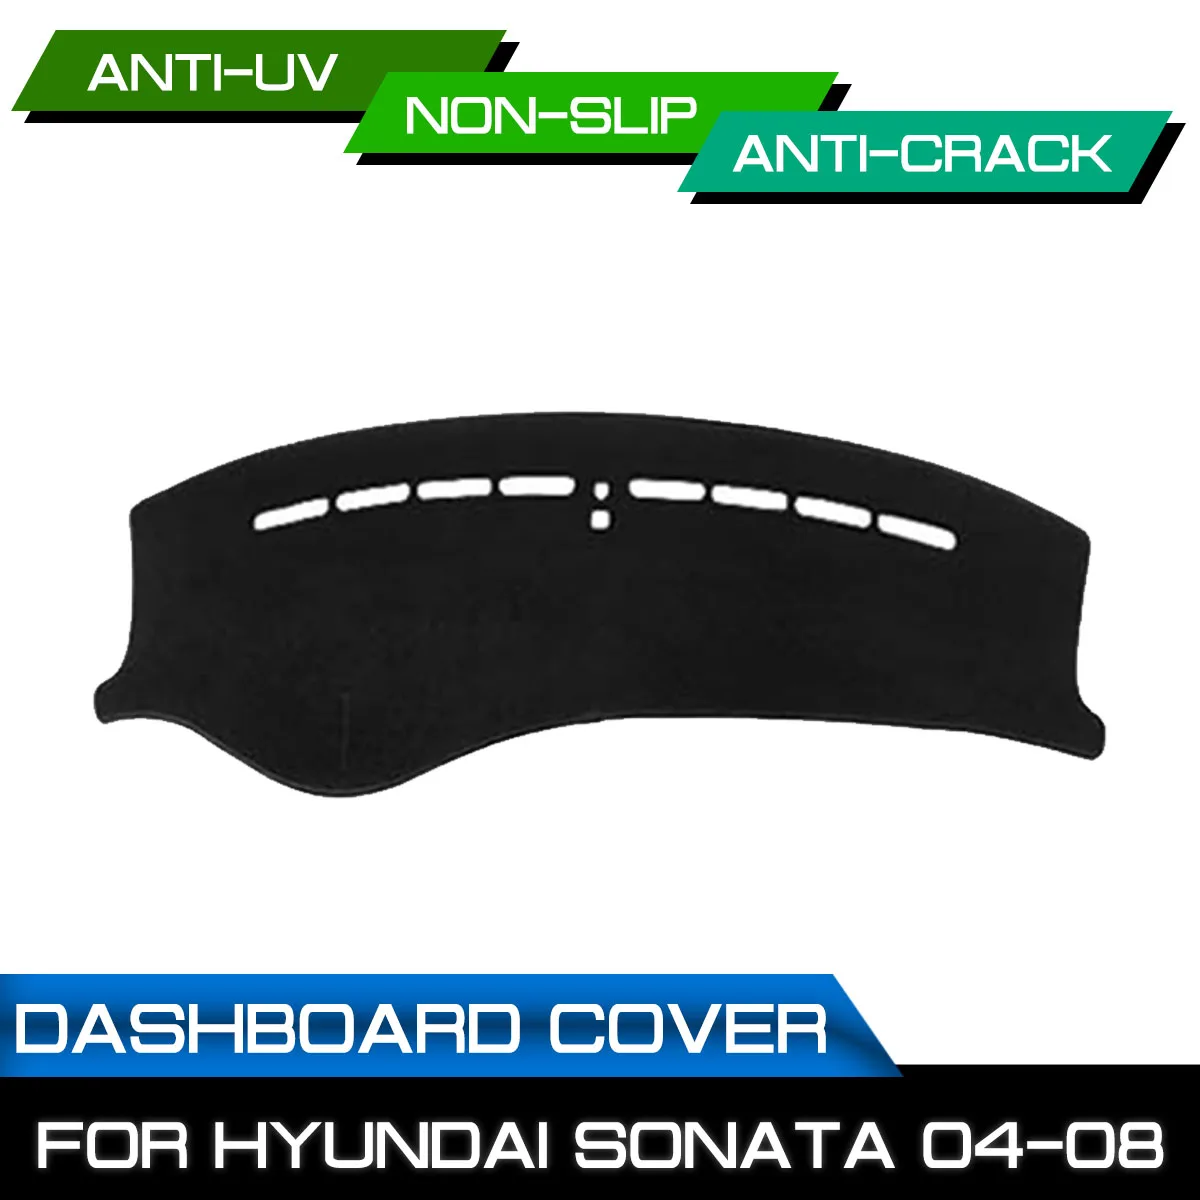 

Коврик для приборной панели автомобиля для Hyundai Sonata 2004, 2005, 2006, 2007, 2008, противоскользящий, защита от ультрафиолета